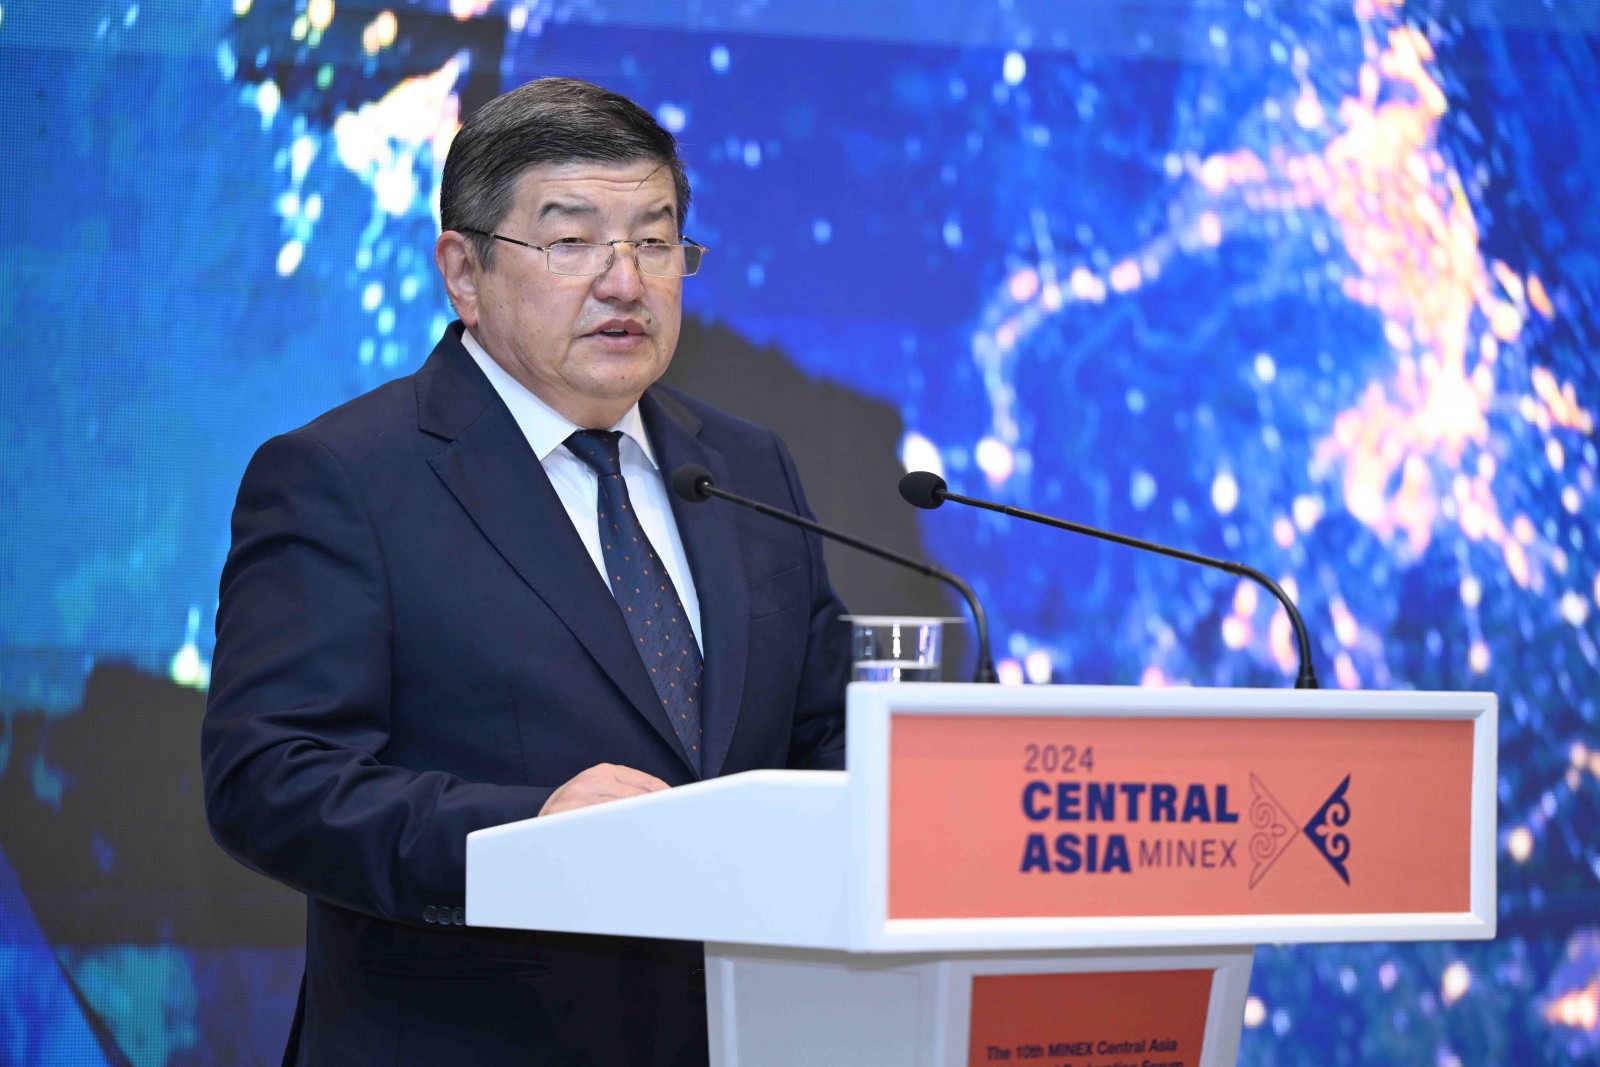 Акылбек Жапаров: Кыргызская Республика — надежный экономический партнер, способный выполнить все взятые на себя экономические обязательства